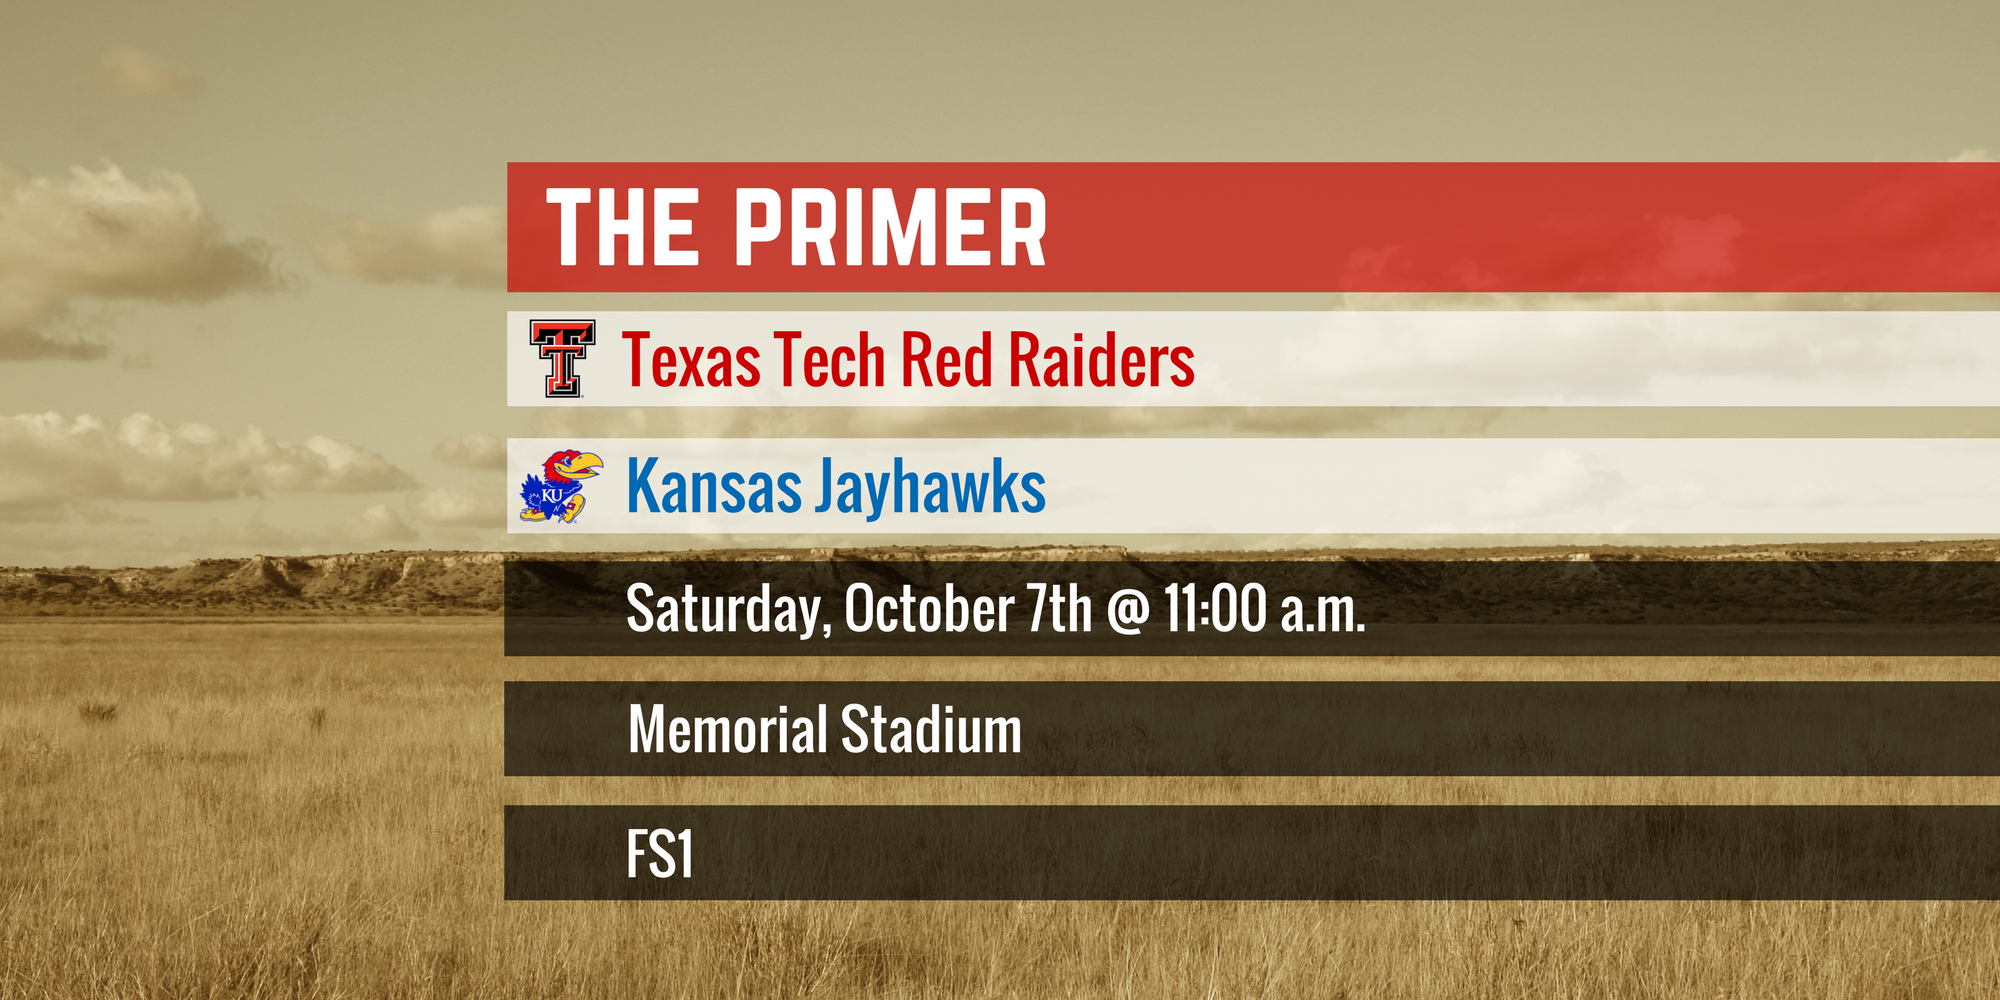 The Primer: Texas Tech vs. Kansas